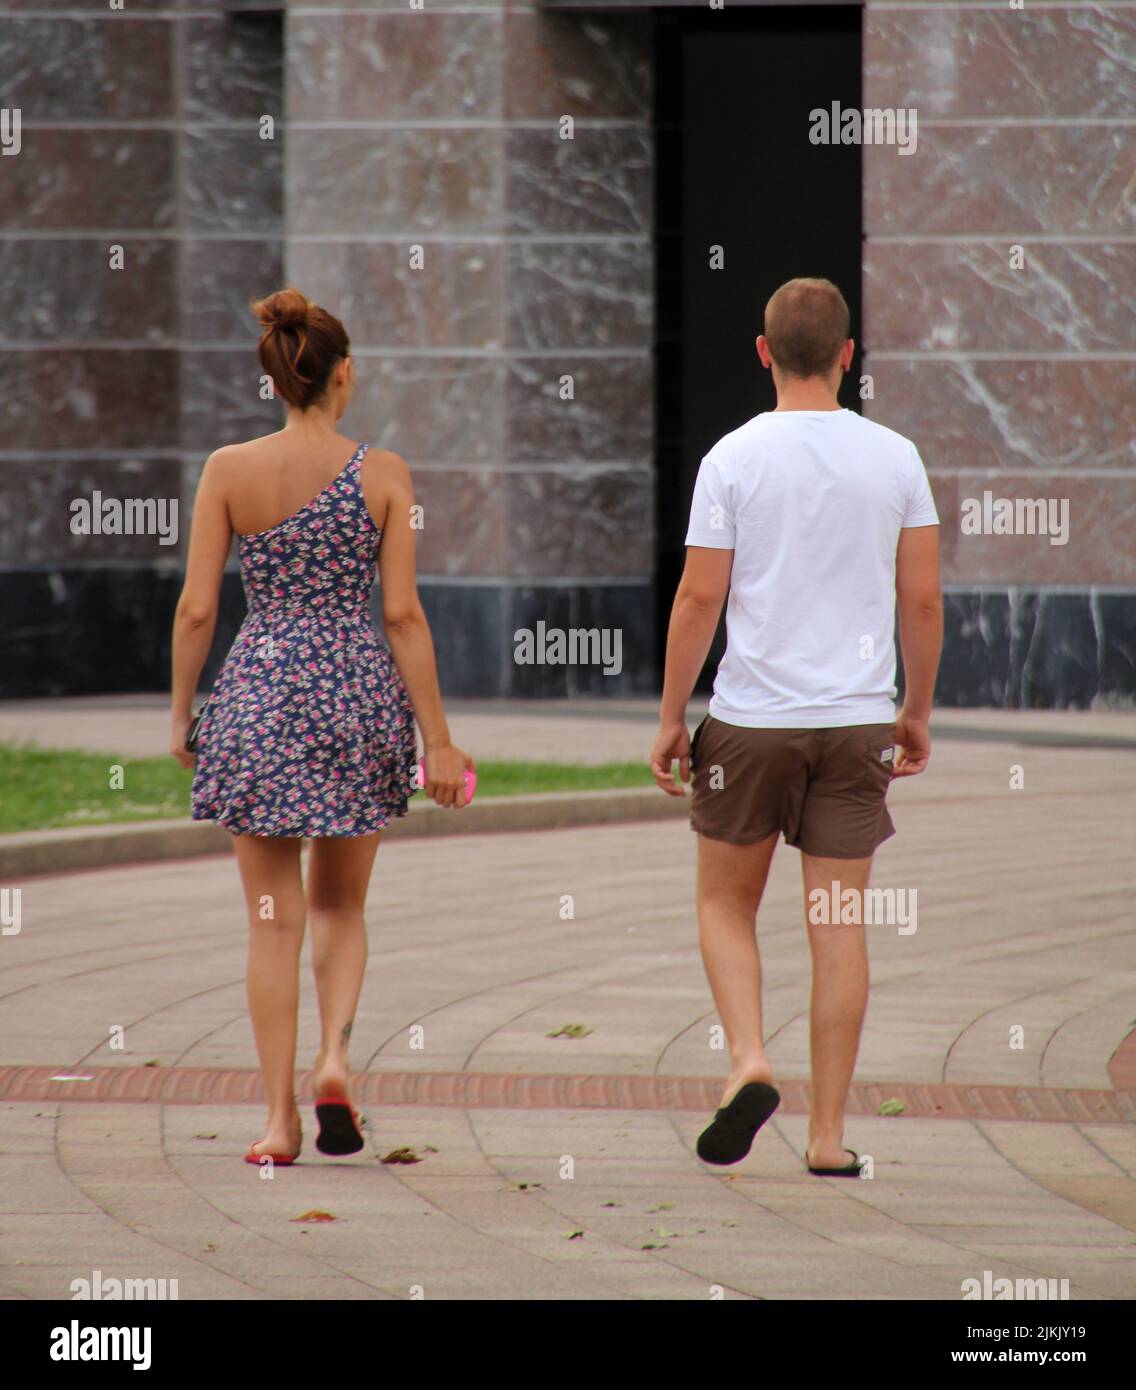 Eine Rückansicht eines Paares im Sommer-Outfit, das im Sommer im Park spazierengeht Stockfoto